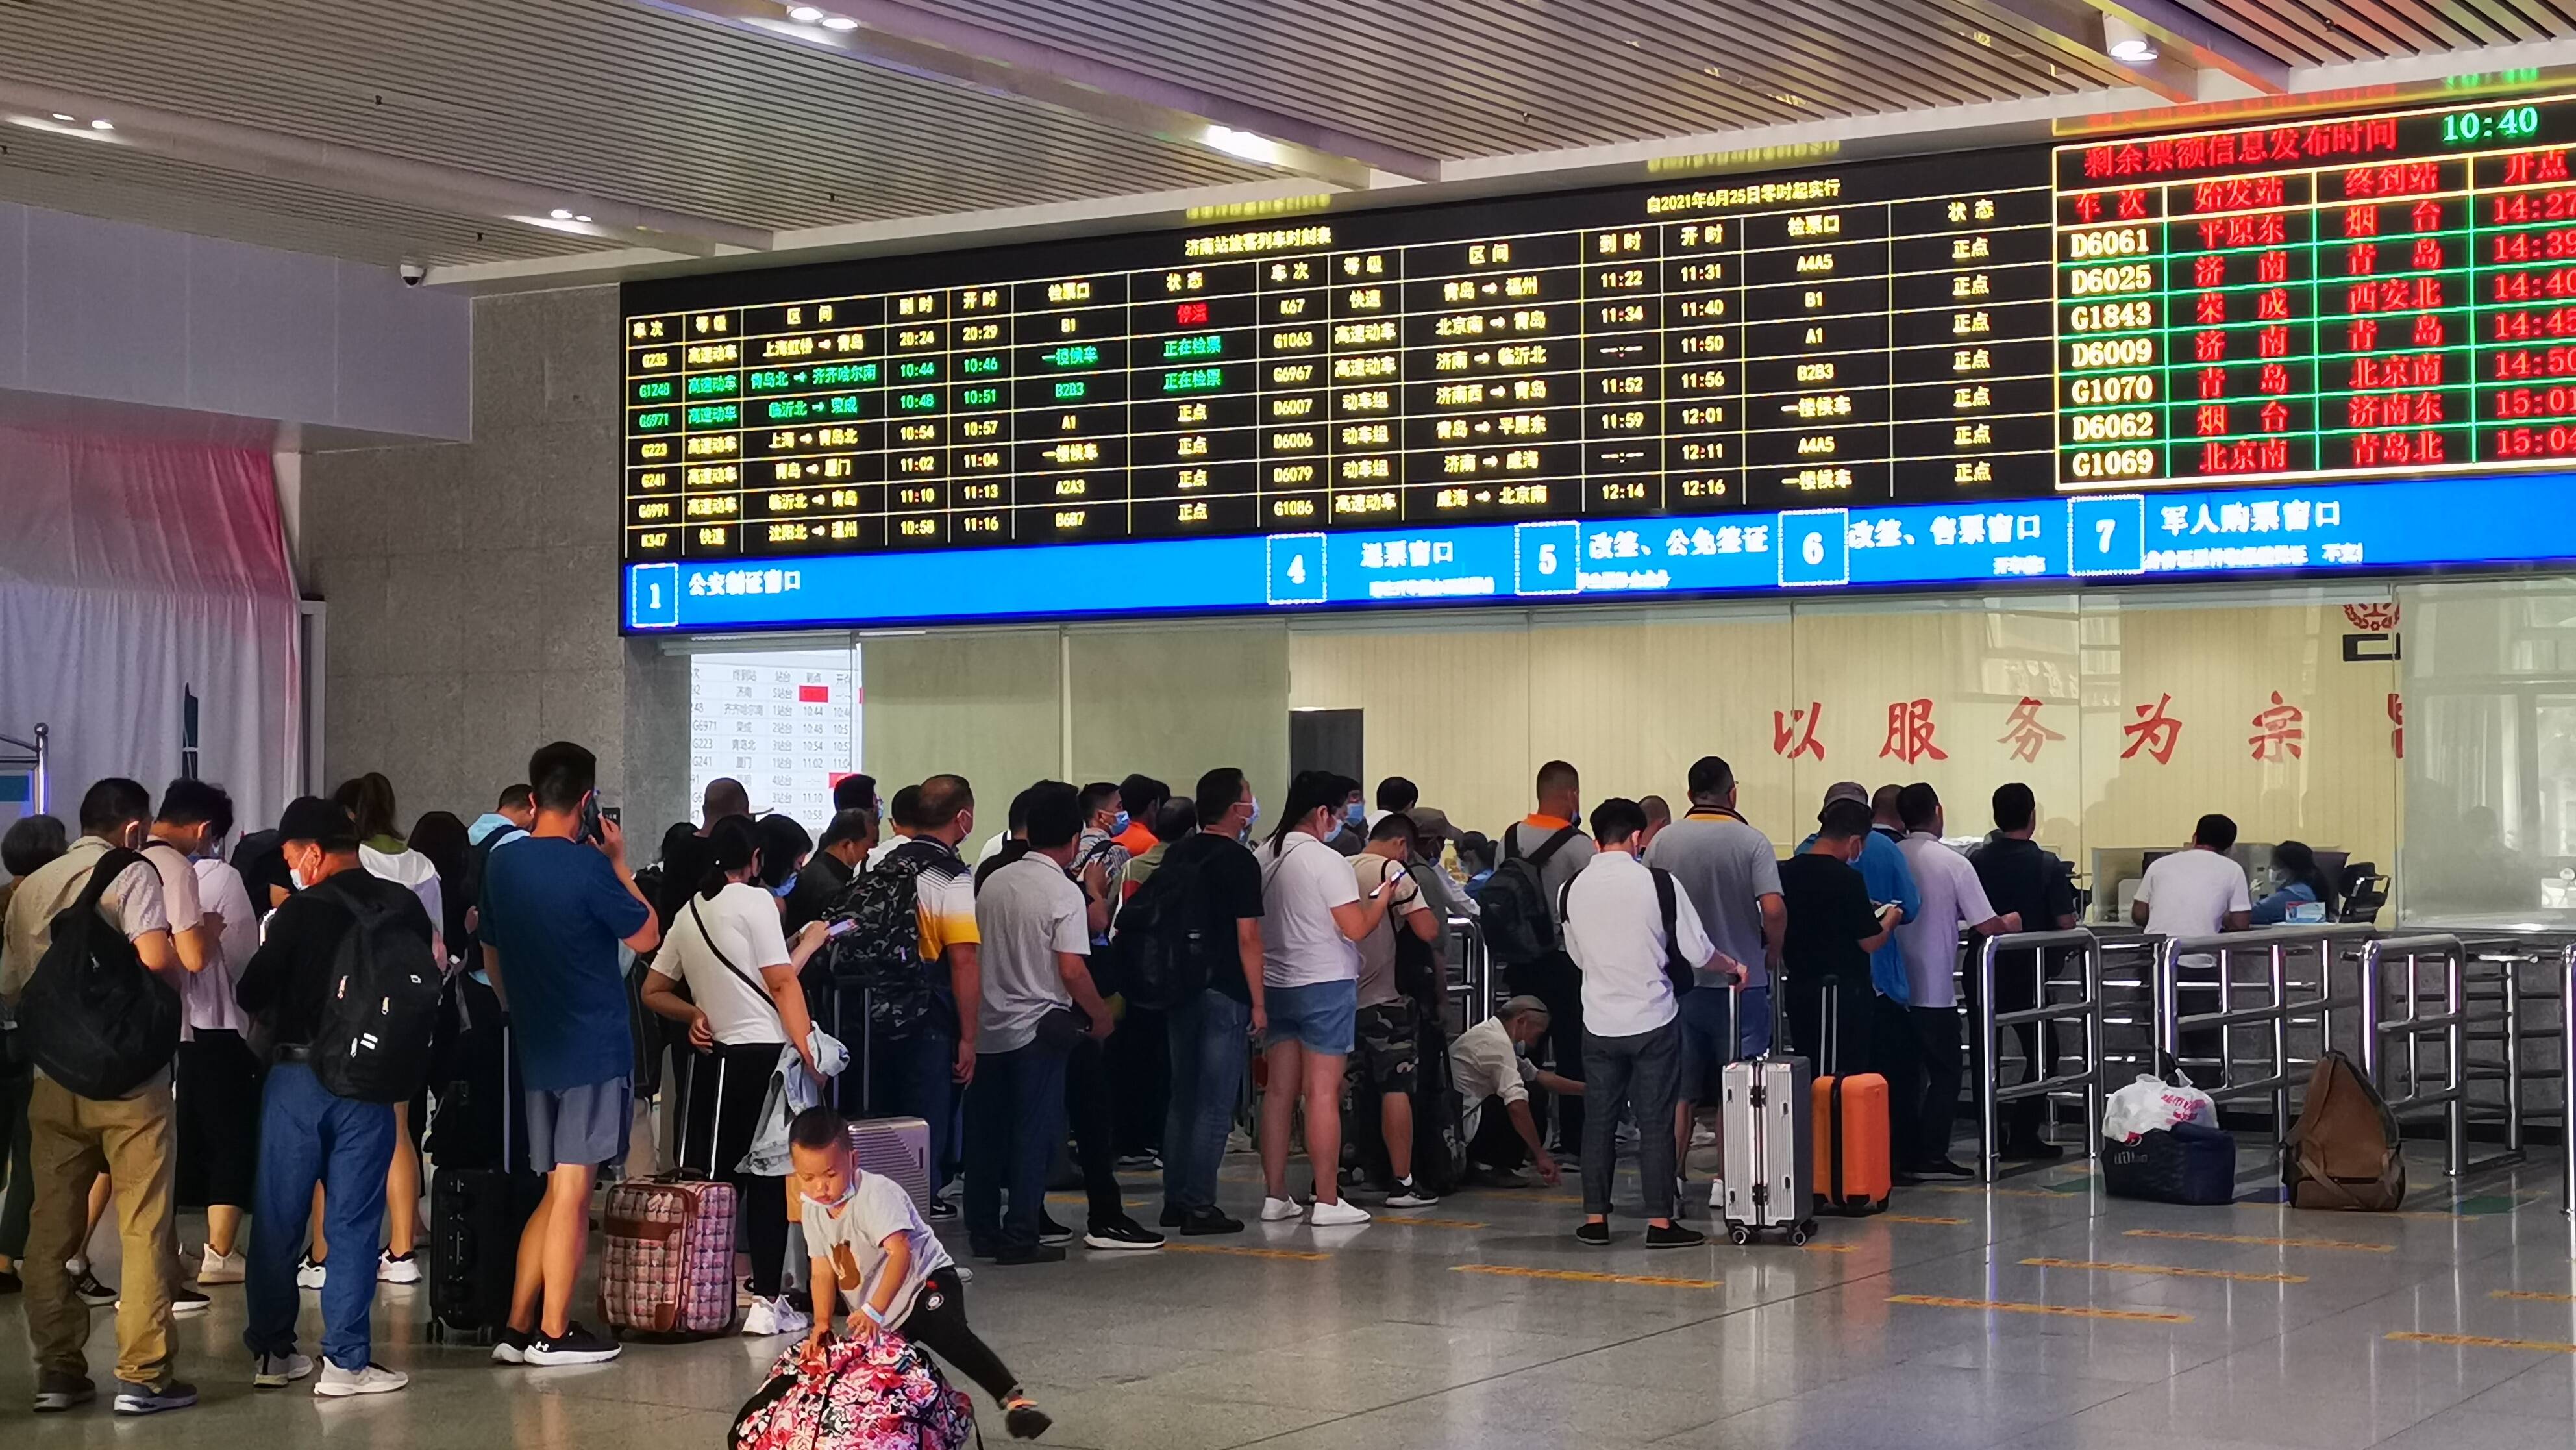 线路优化增加晚间列车 国铁济南局10月11日实行新列车运行图